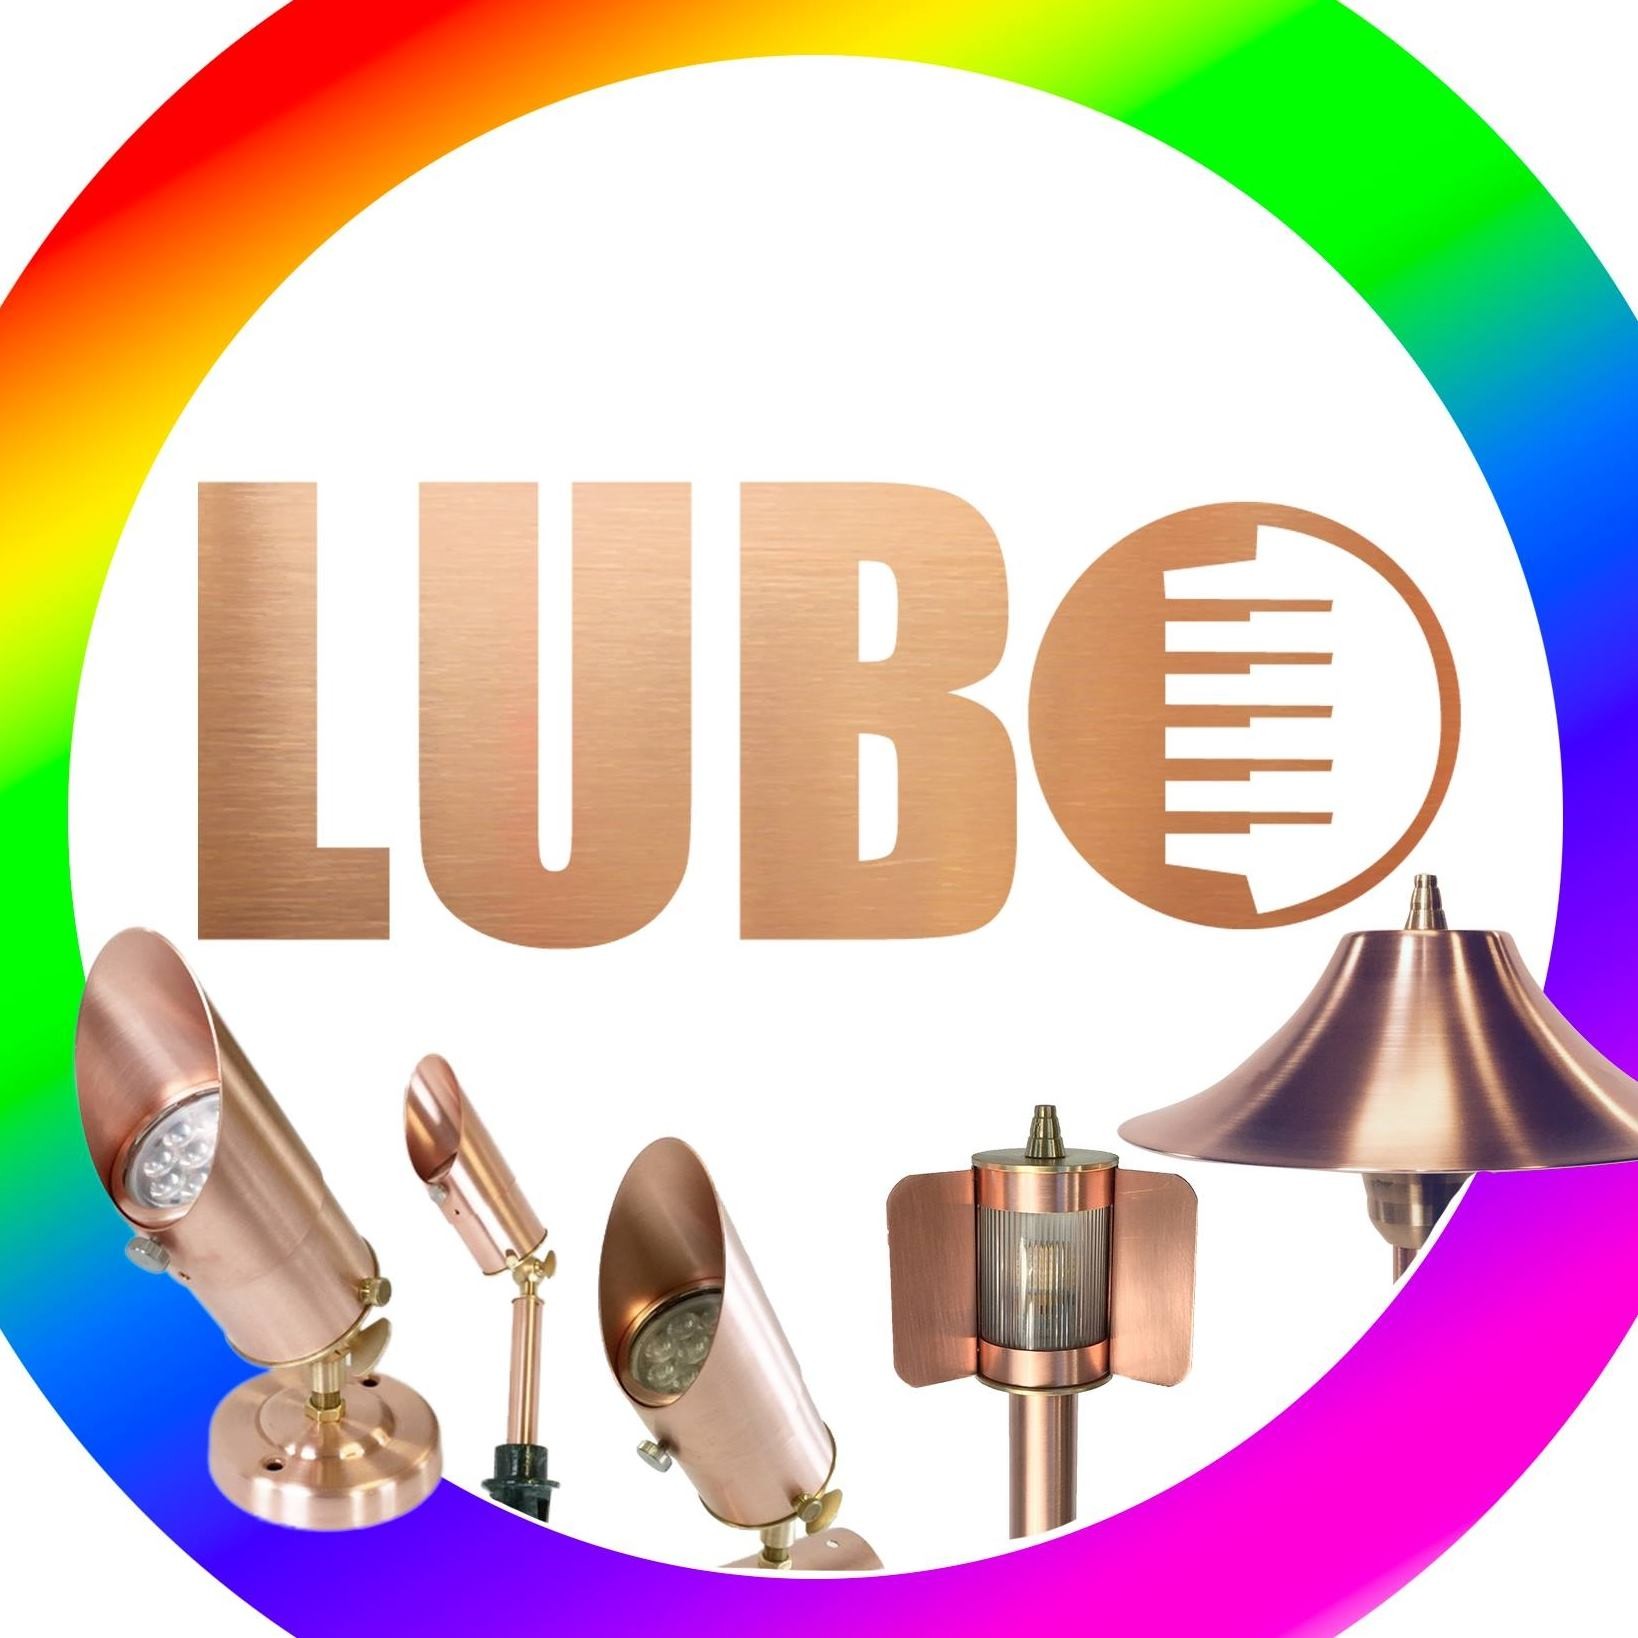 LUBO Lighting